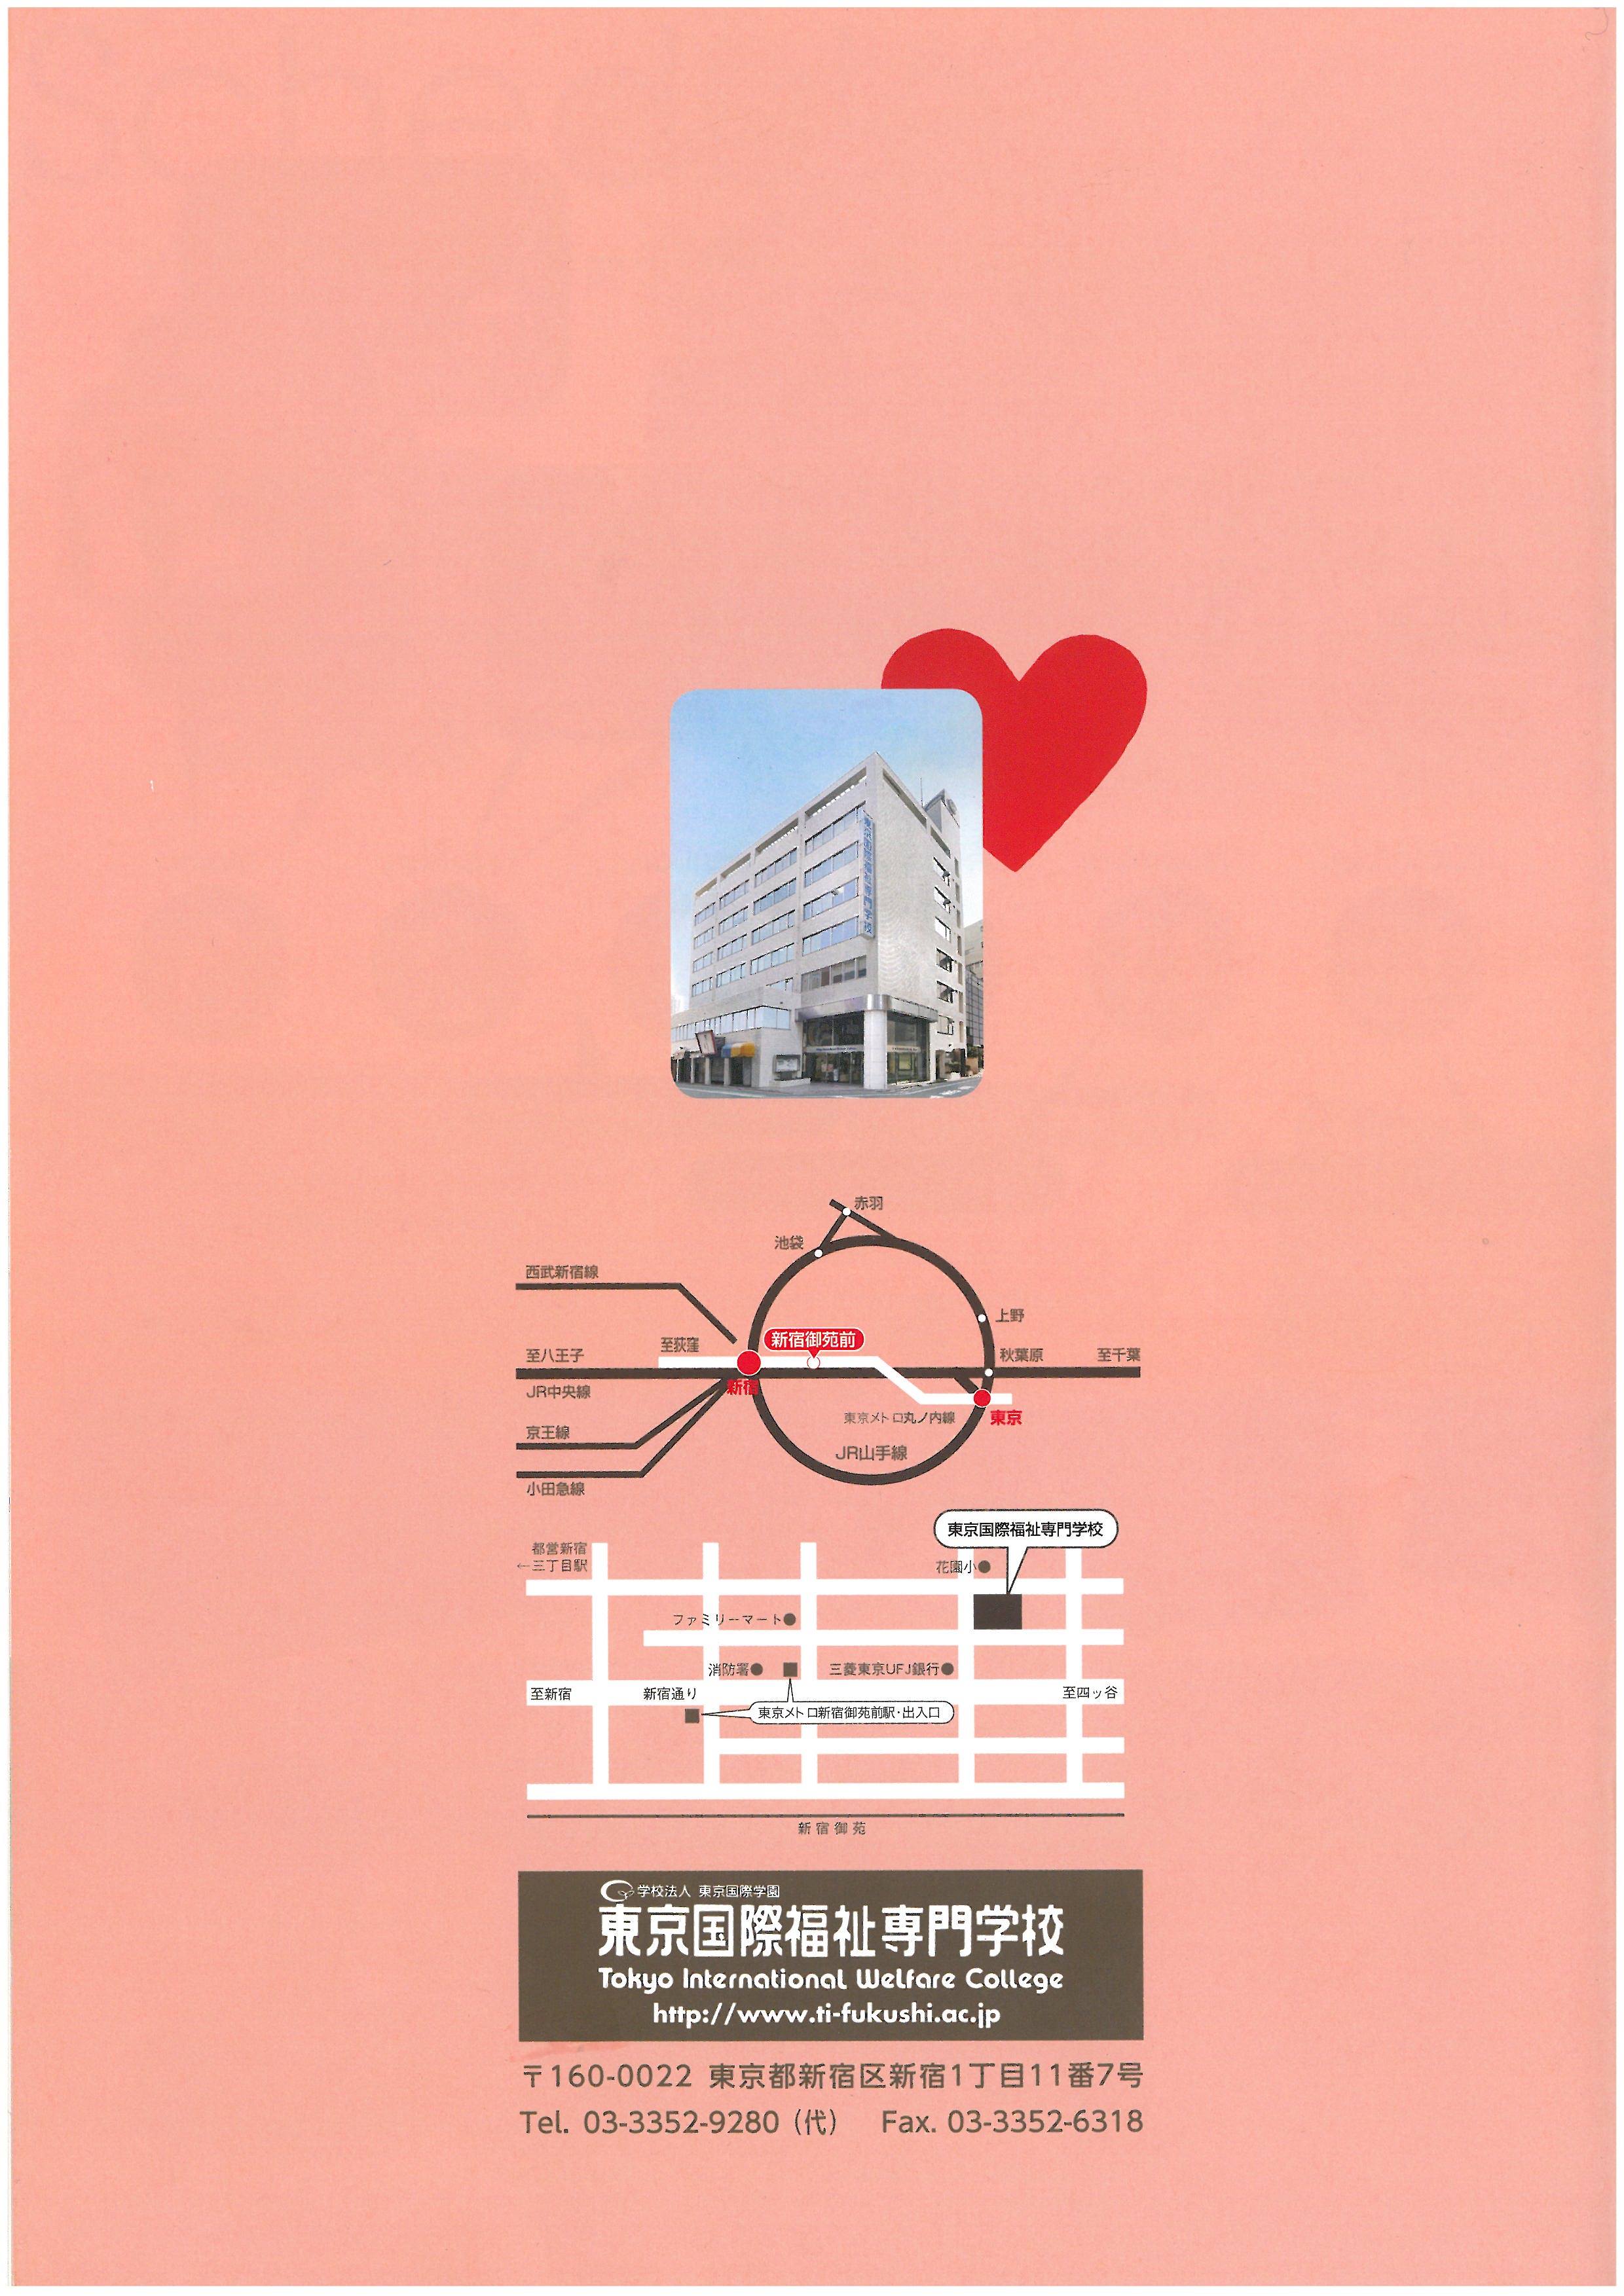 도쿄 국제복지전문학교 홍보 팜플렛 20.jpg